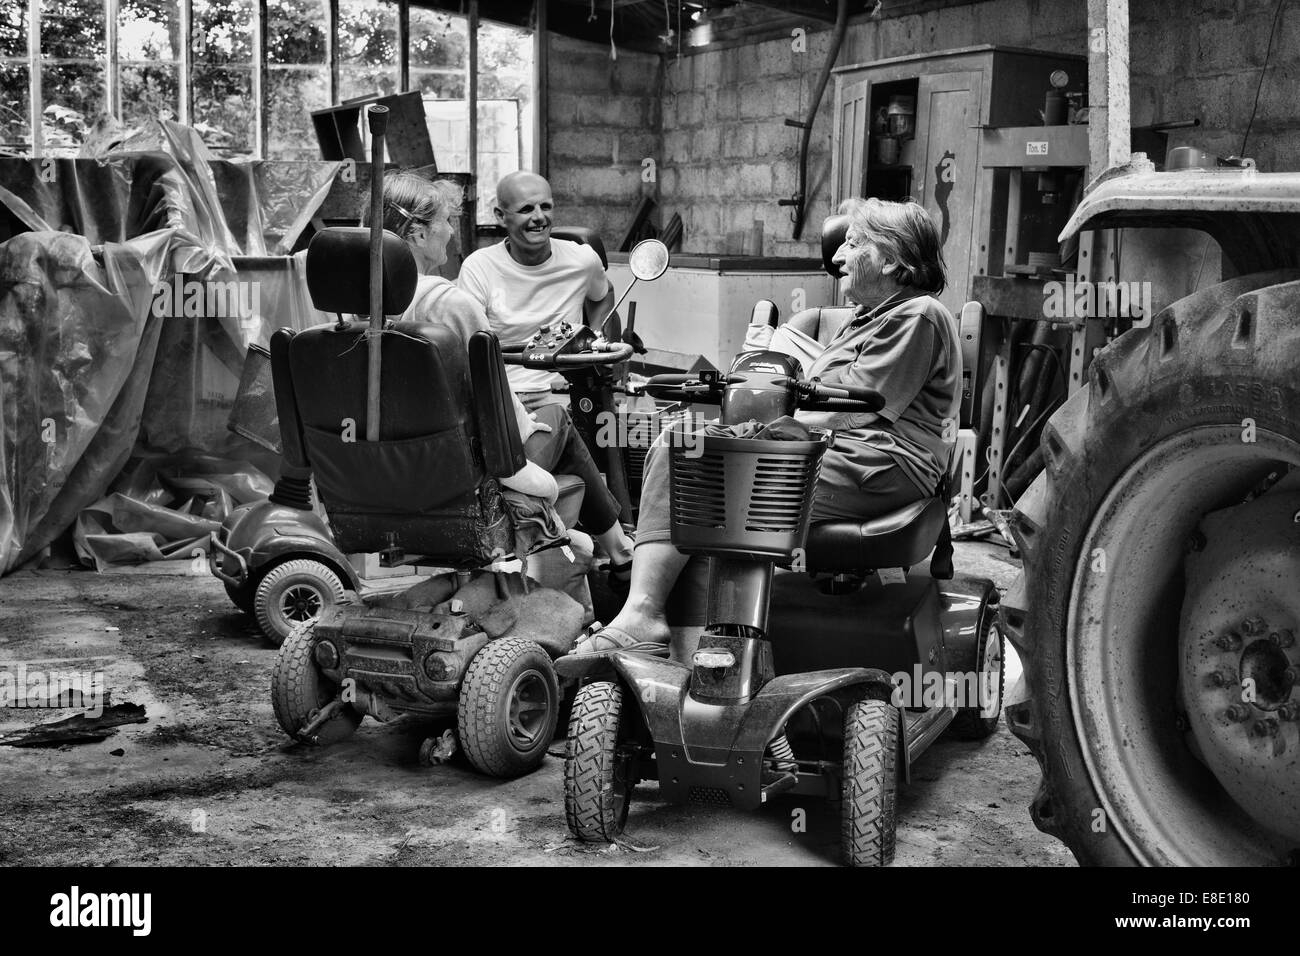 Tre persone sedute sulla mobilità di scooter a chattare in un vecchio capannone del trattore Foto Stock